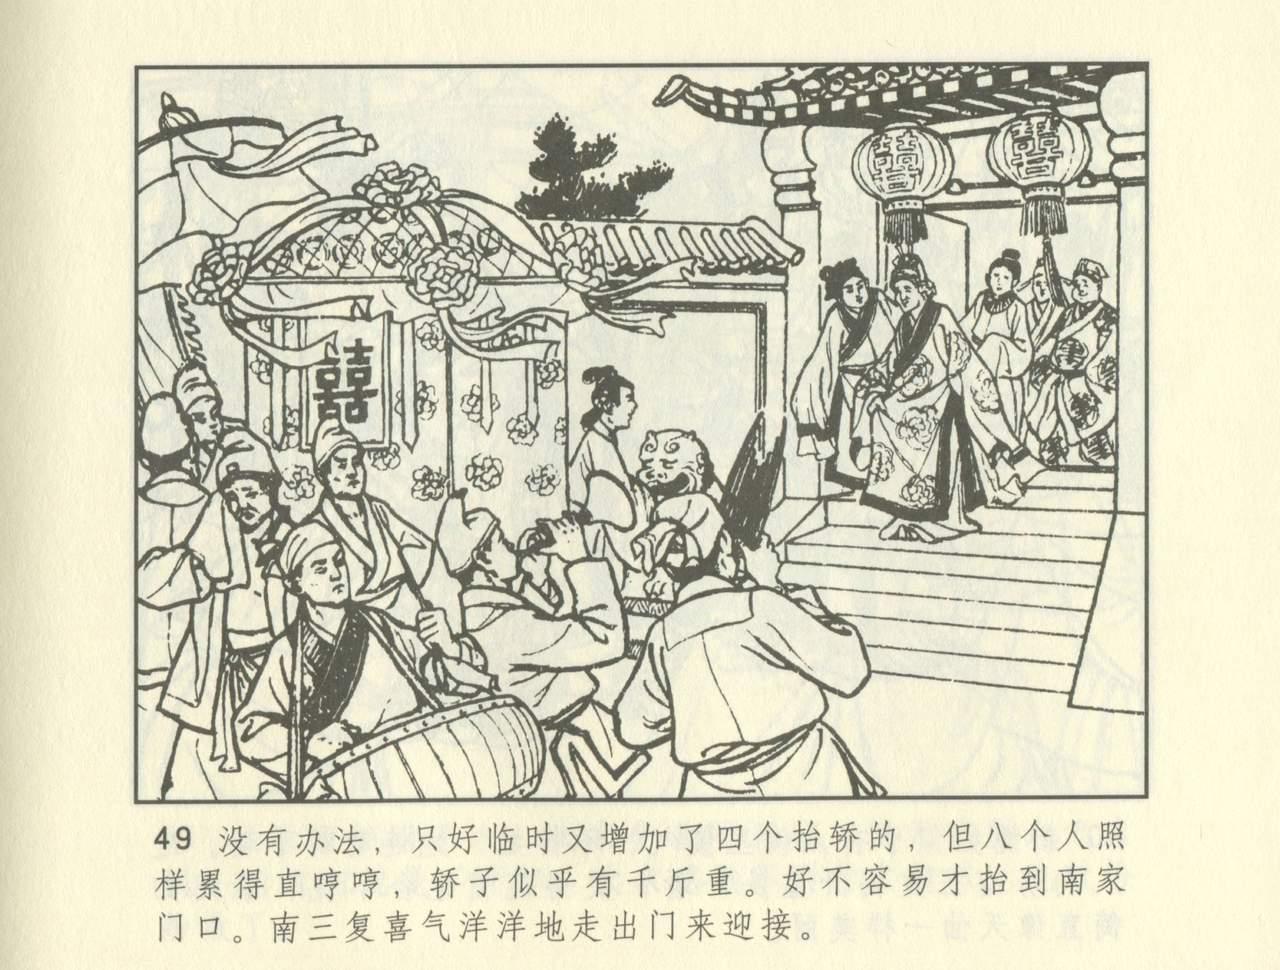 聊斋志异 张玮等绘 天津人民美术出版社 卷二十一 ~ 三十 258